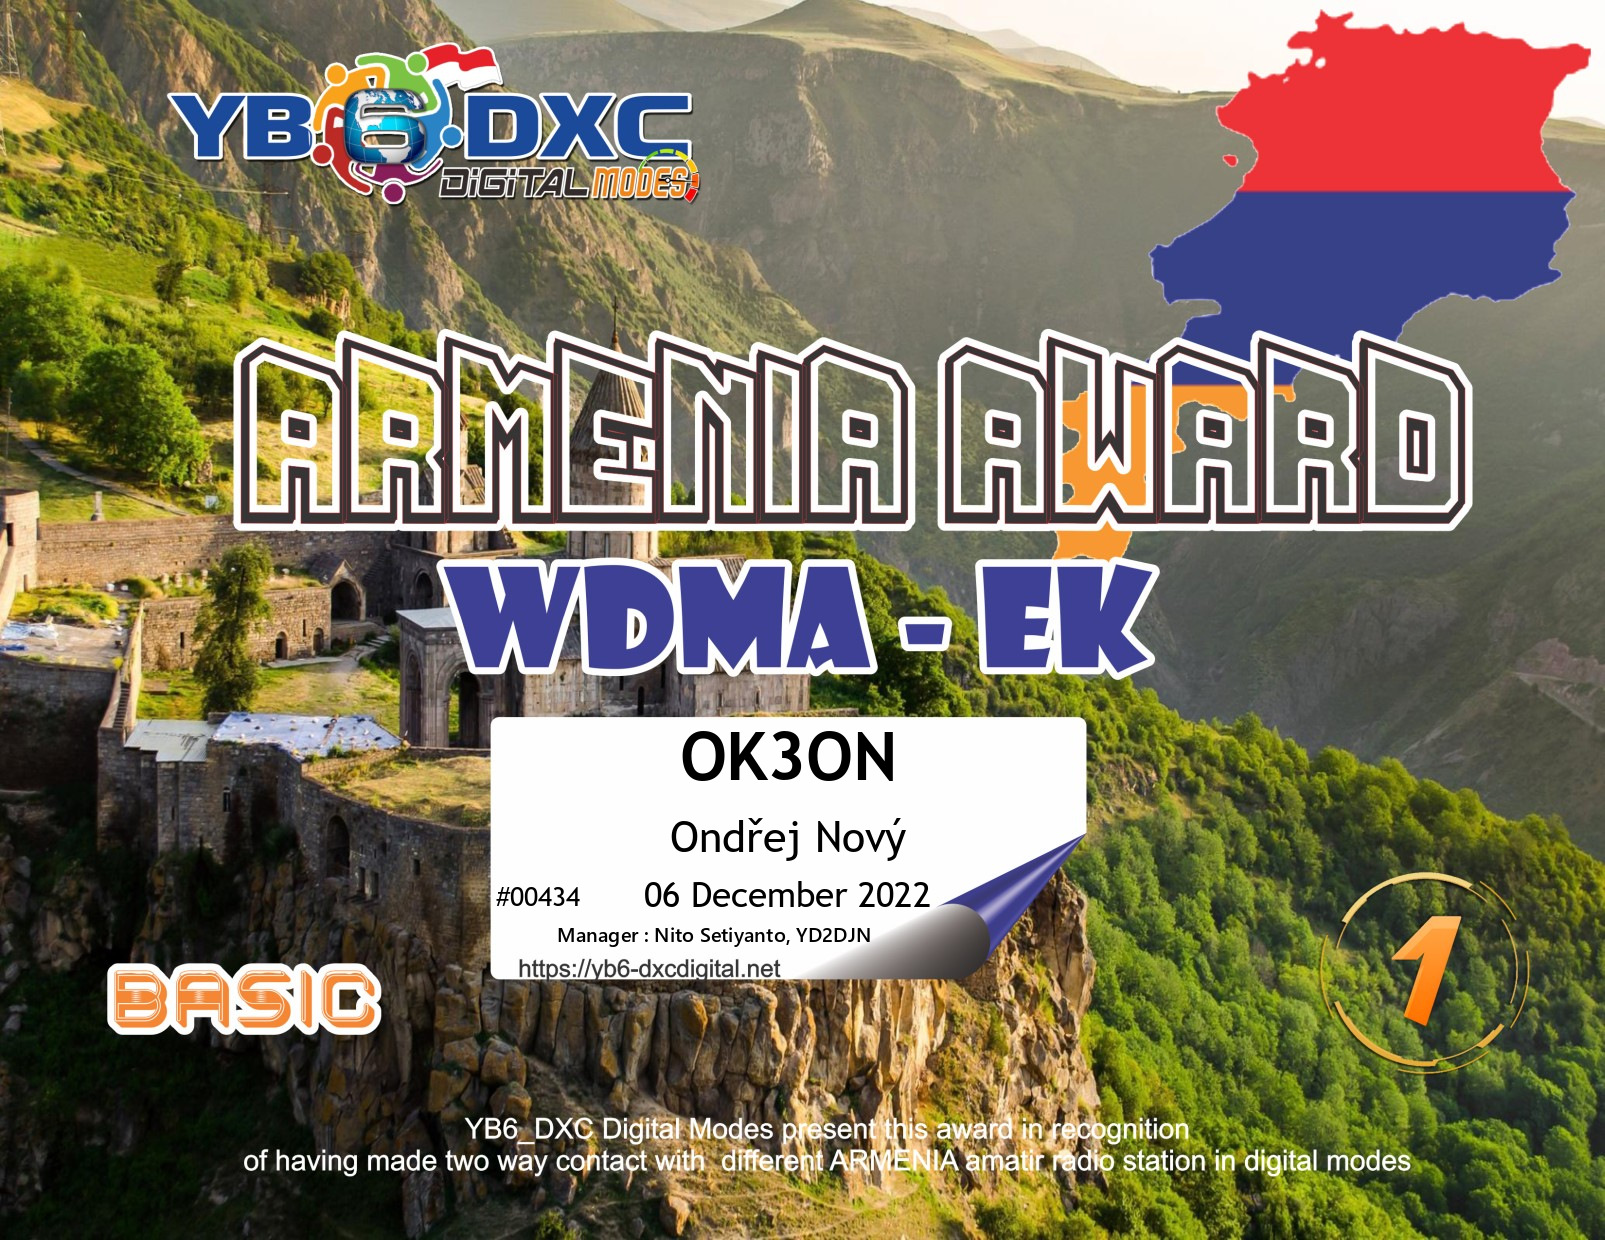 awards/OK3ON-WDMEK-BASIC_YB6DXC.jpg